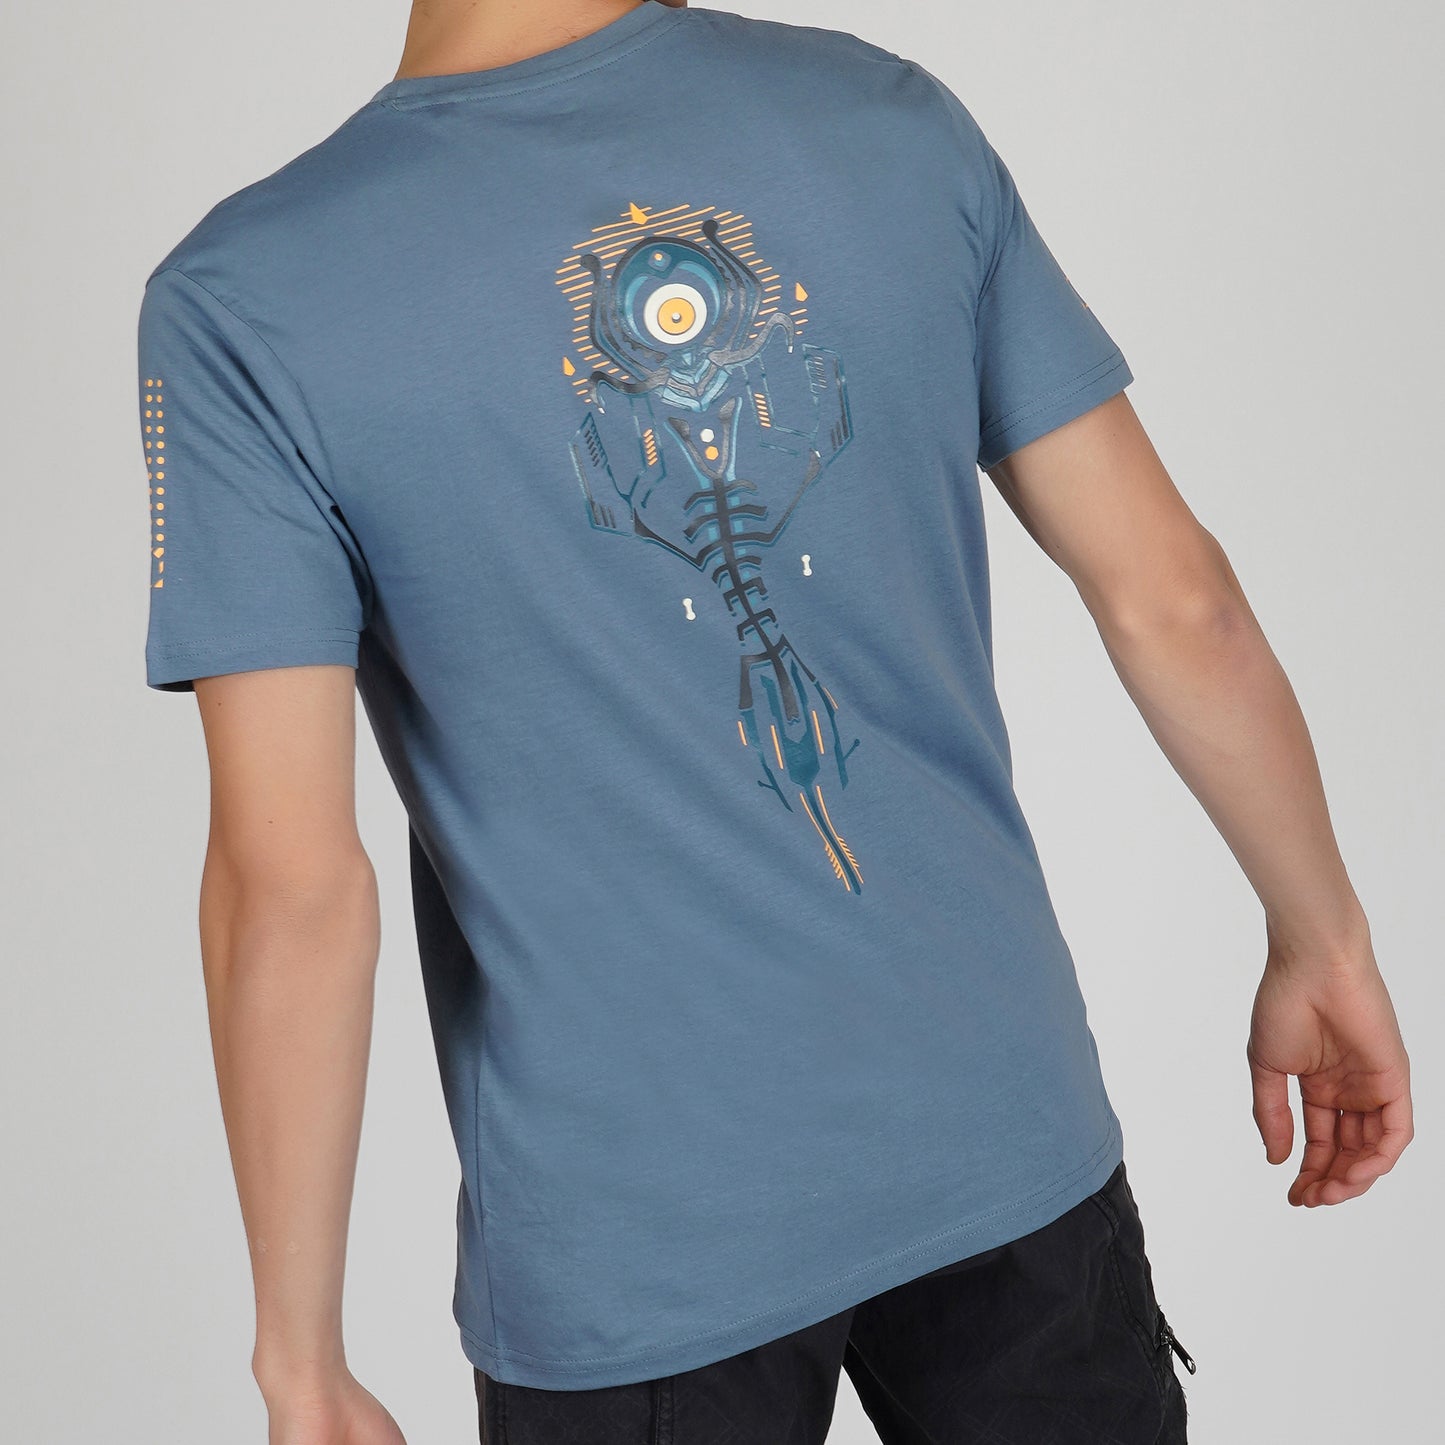 Oni T-shirt met ronde hals en halve mouwen in oceaanblauwe kleur